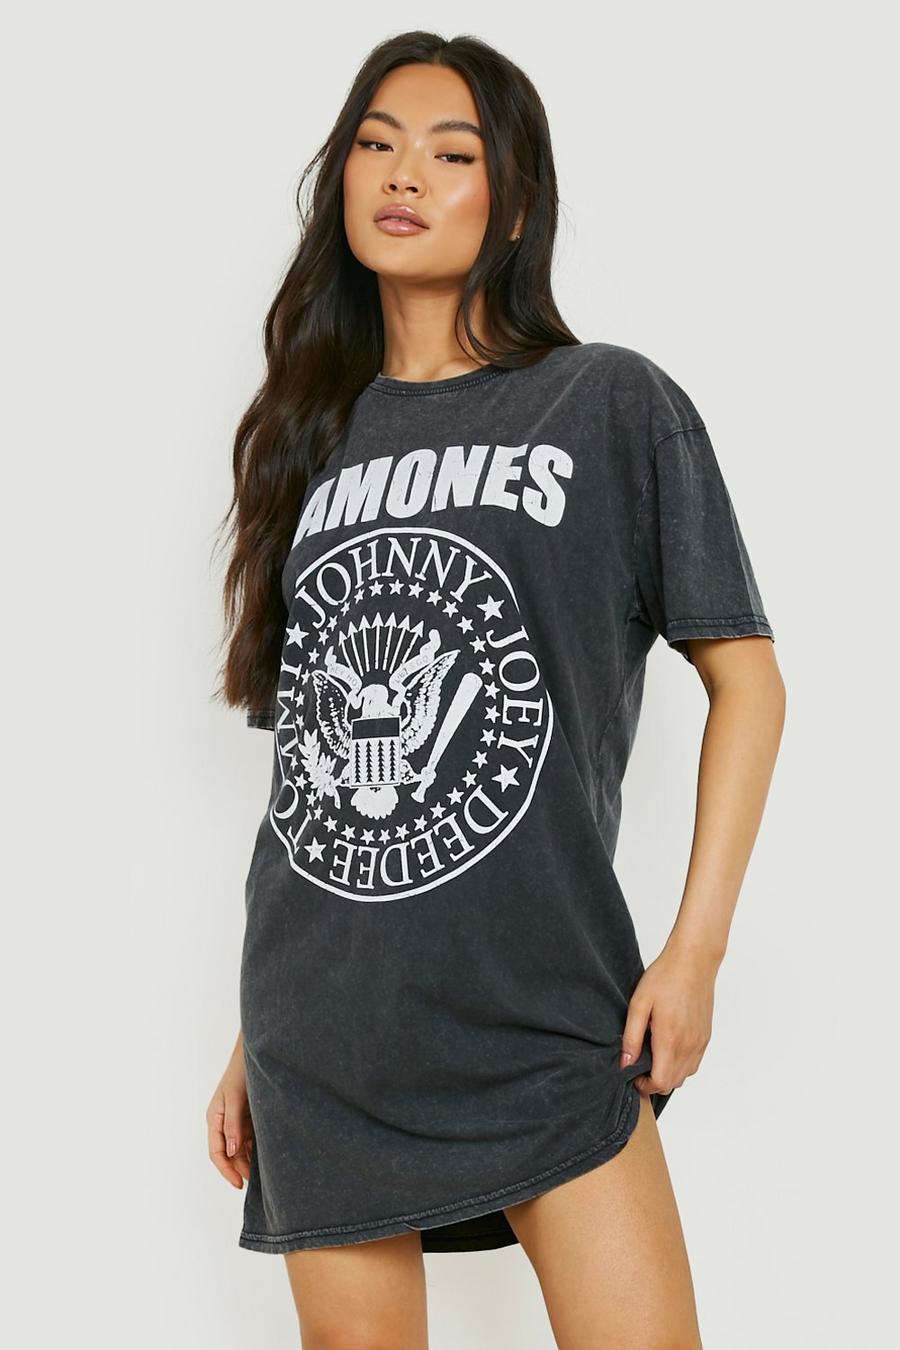 Charcoal Ramones Acid Wash Licensed T-shirt Dress  image number 1